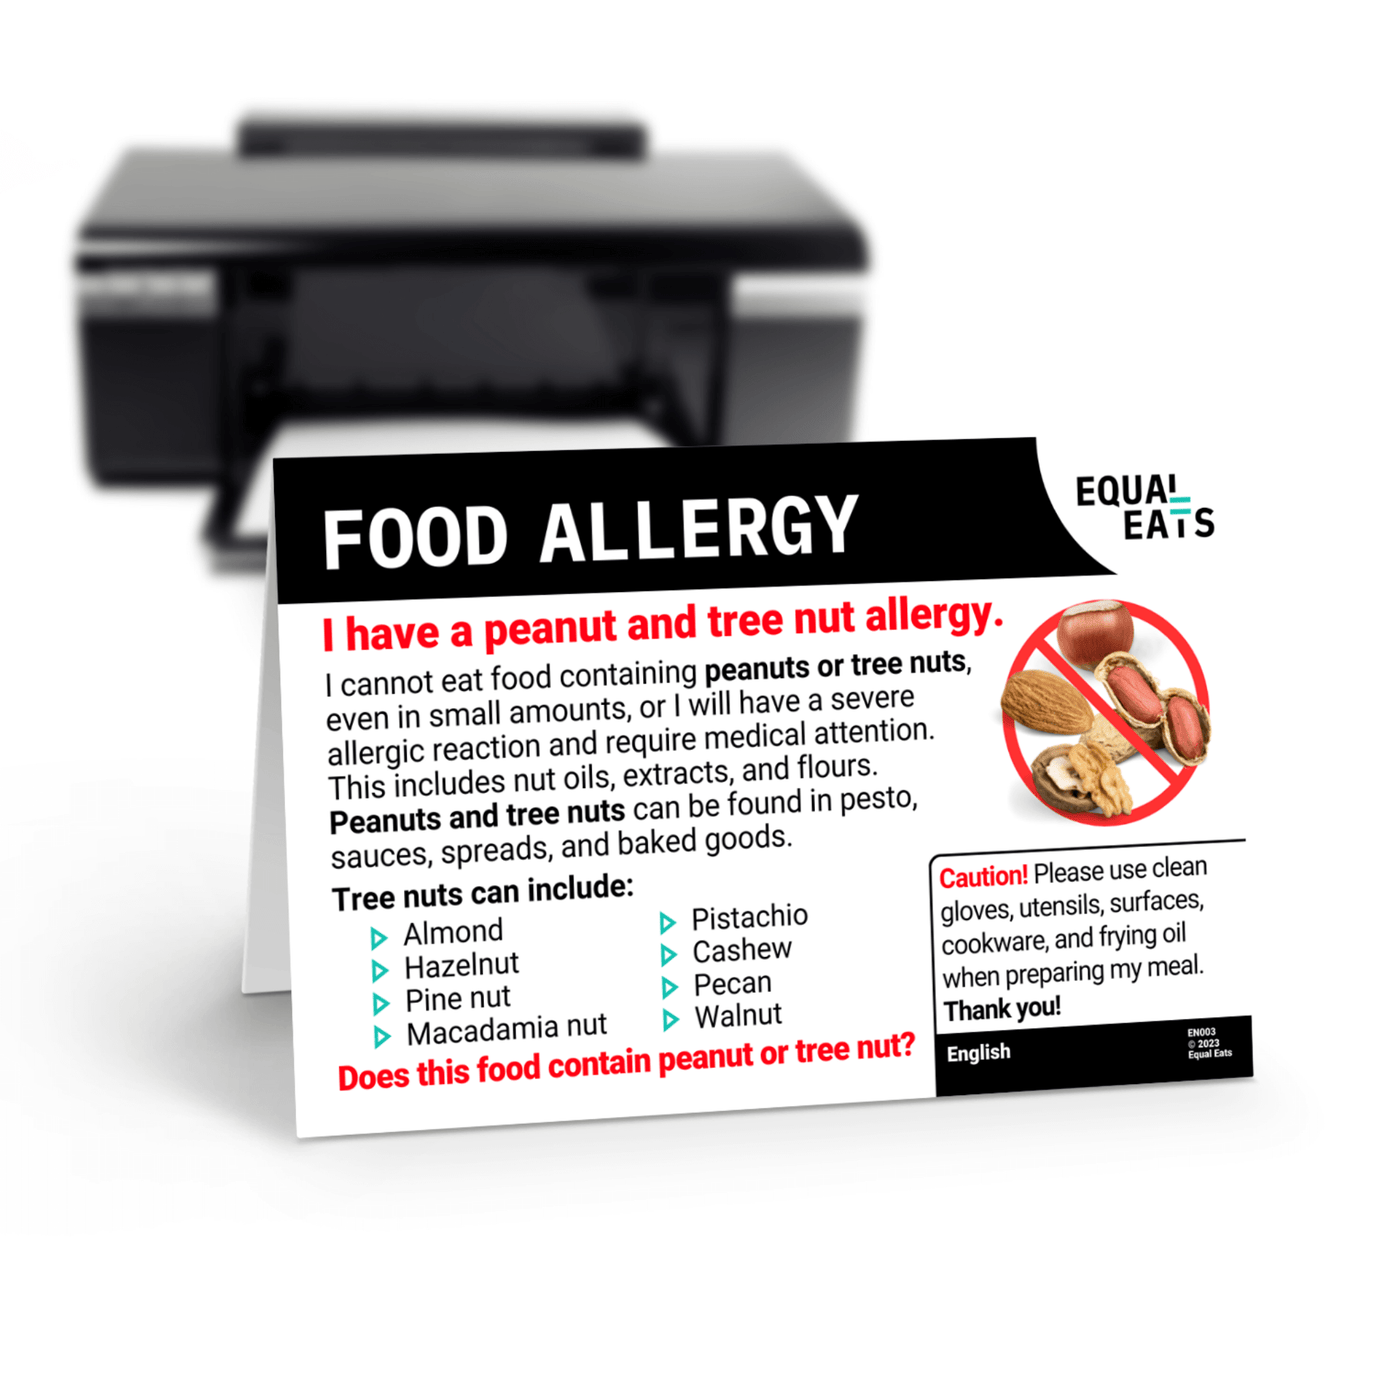 Greek Printable Allergy Card for Tree Nut Allergies